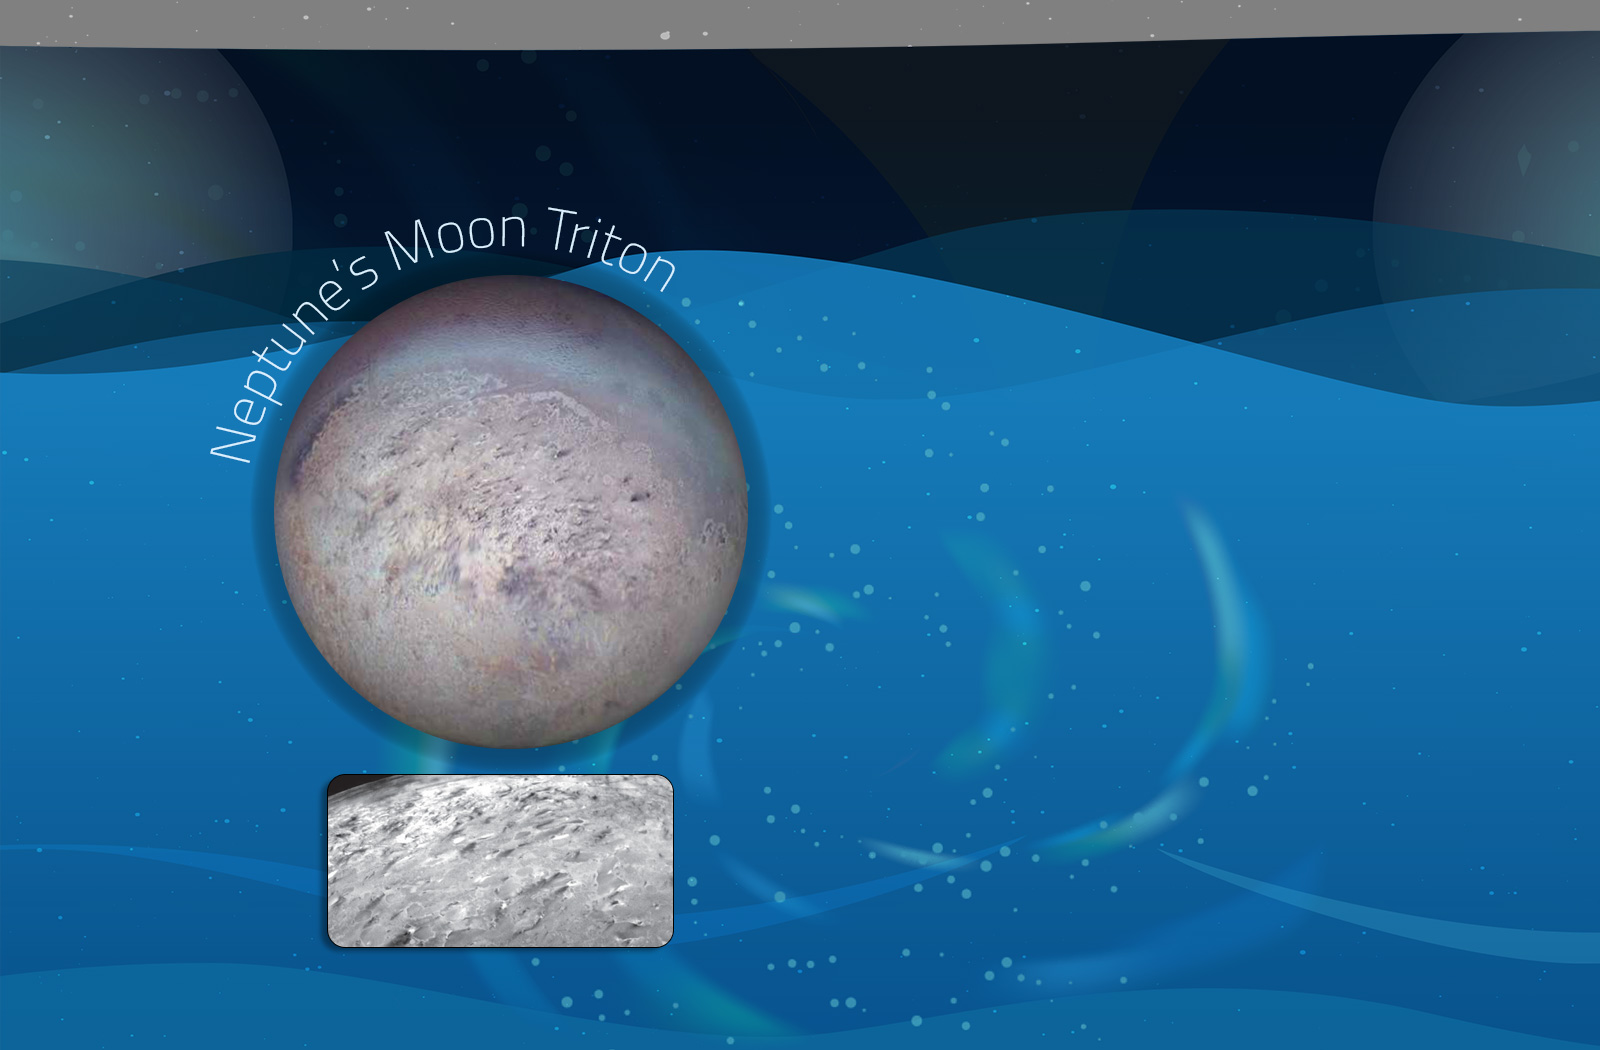 Neptune's Moon Triton